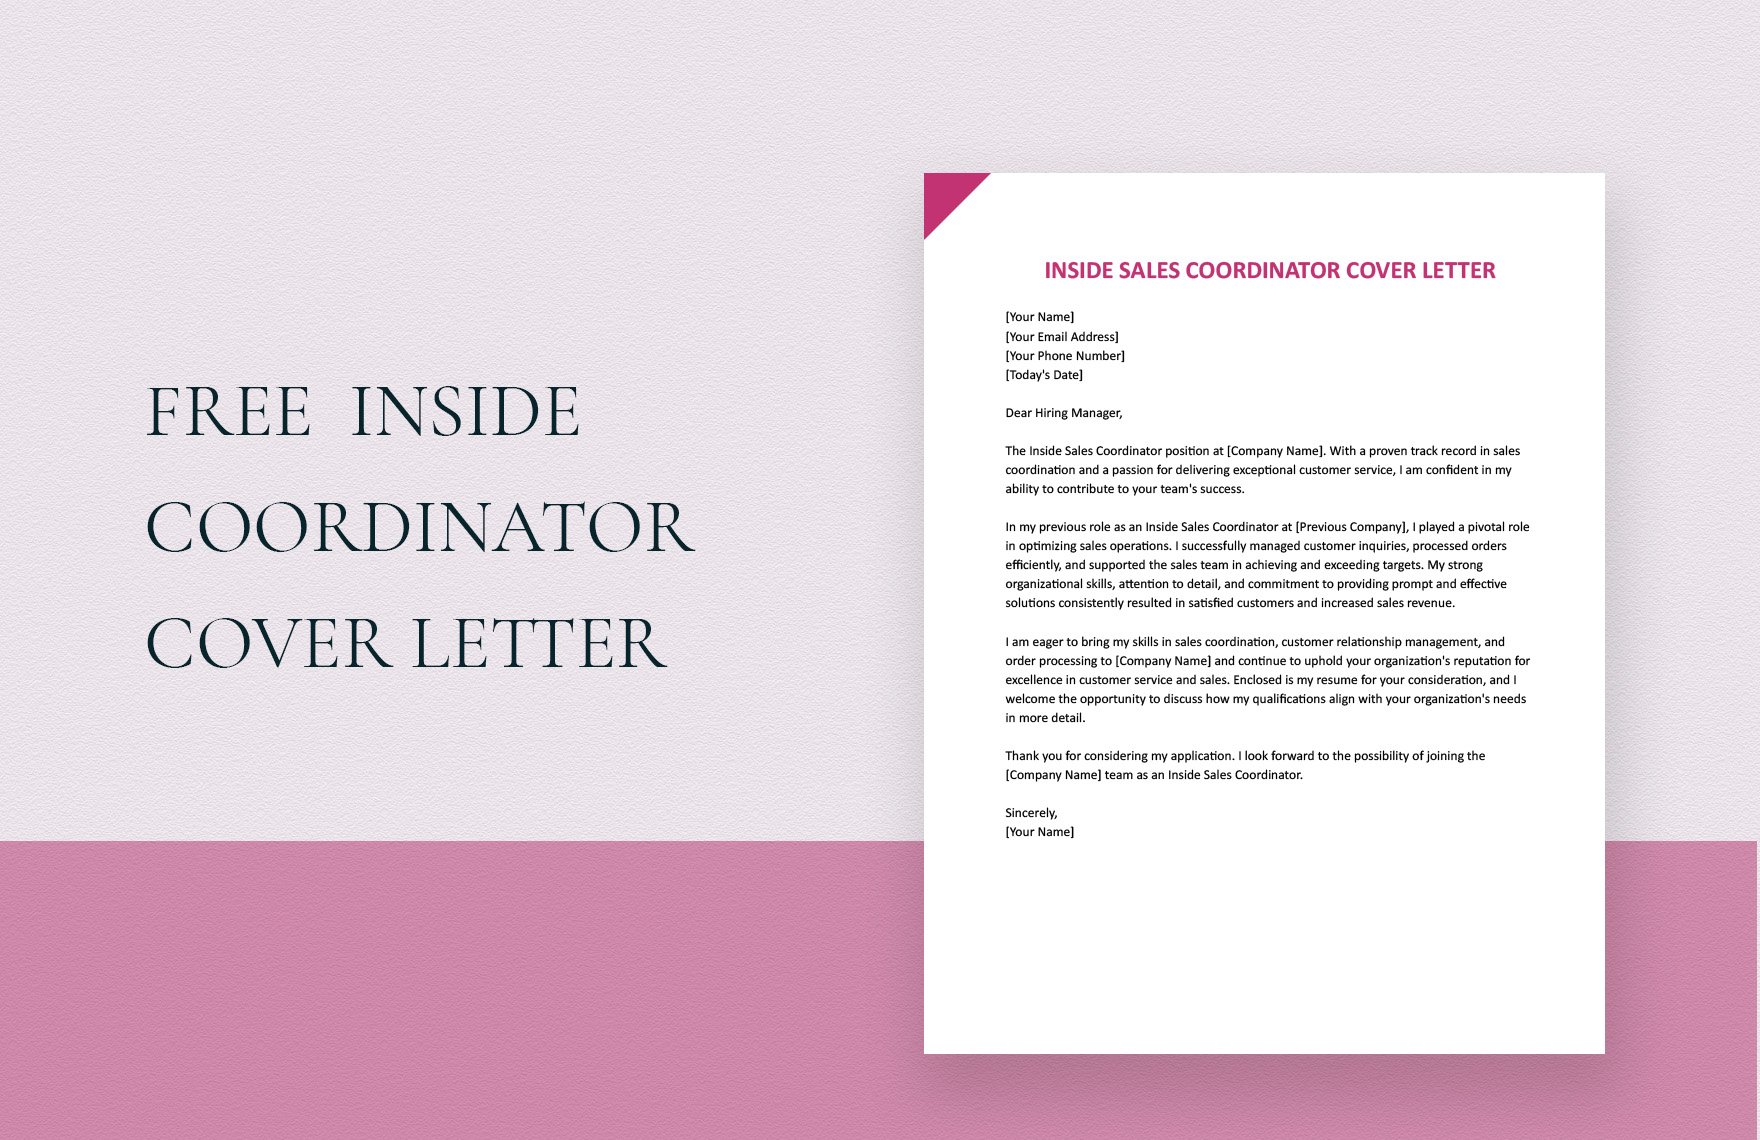 Inside Sales Coordinator Cover Letter